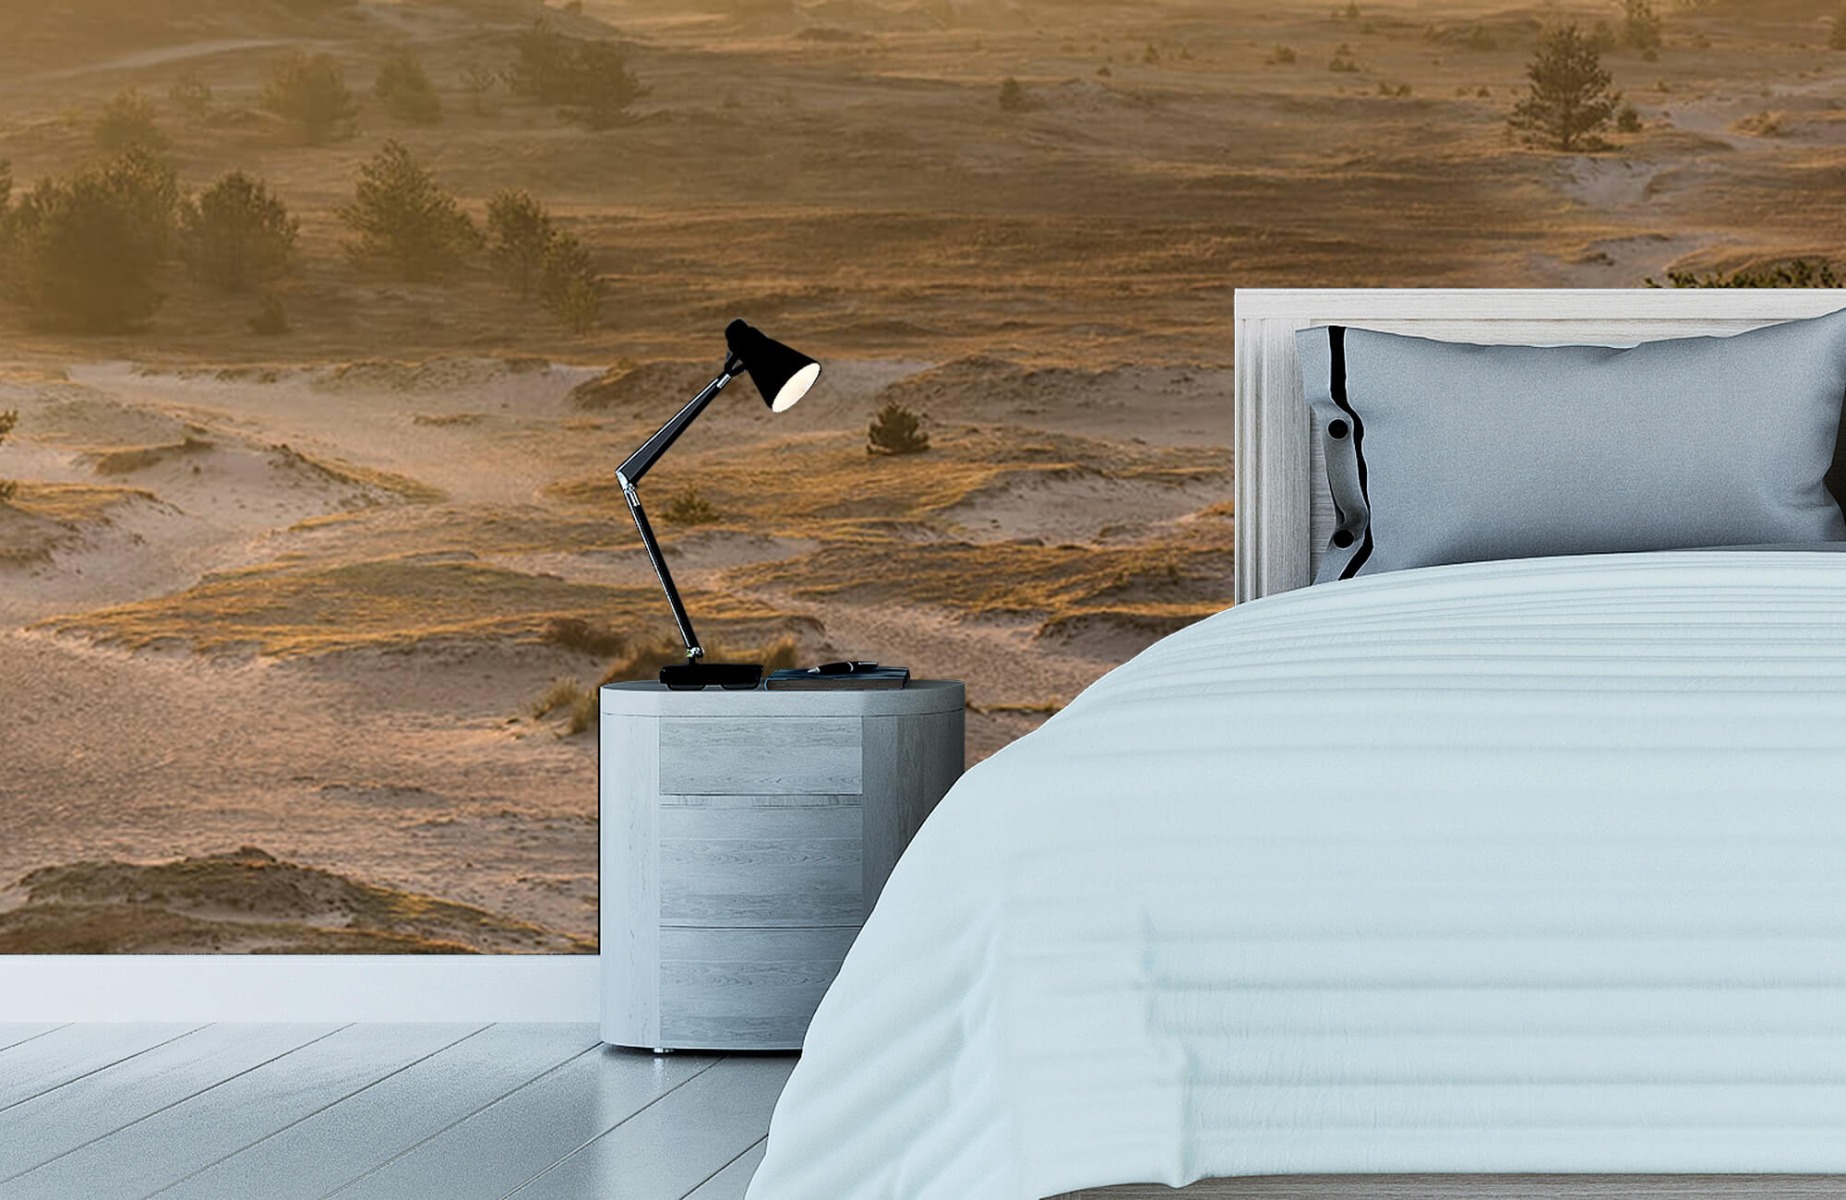 Landscape wallpaper - Kootwijker sand - Bedroom 13